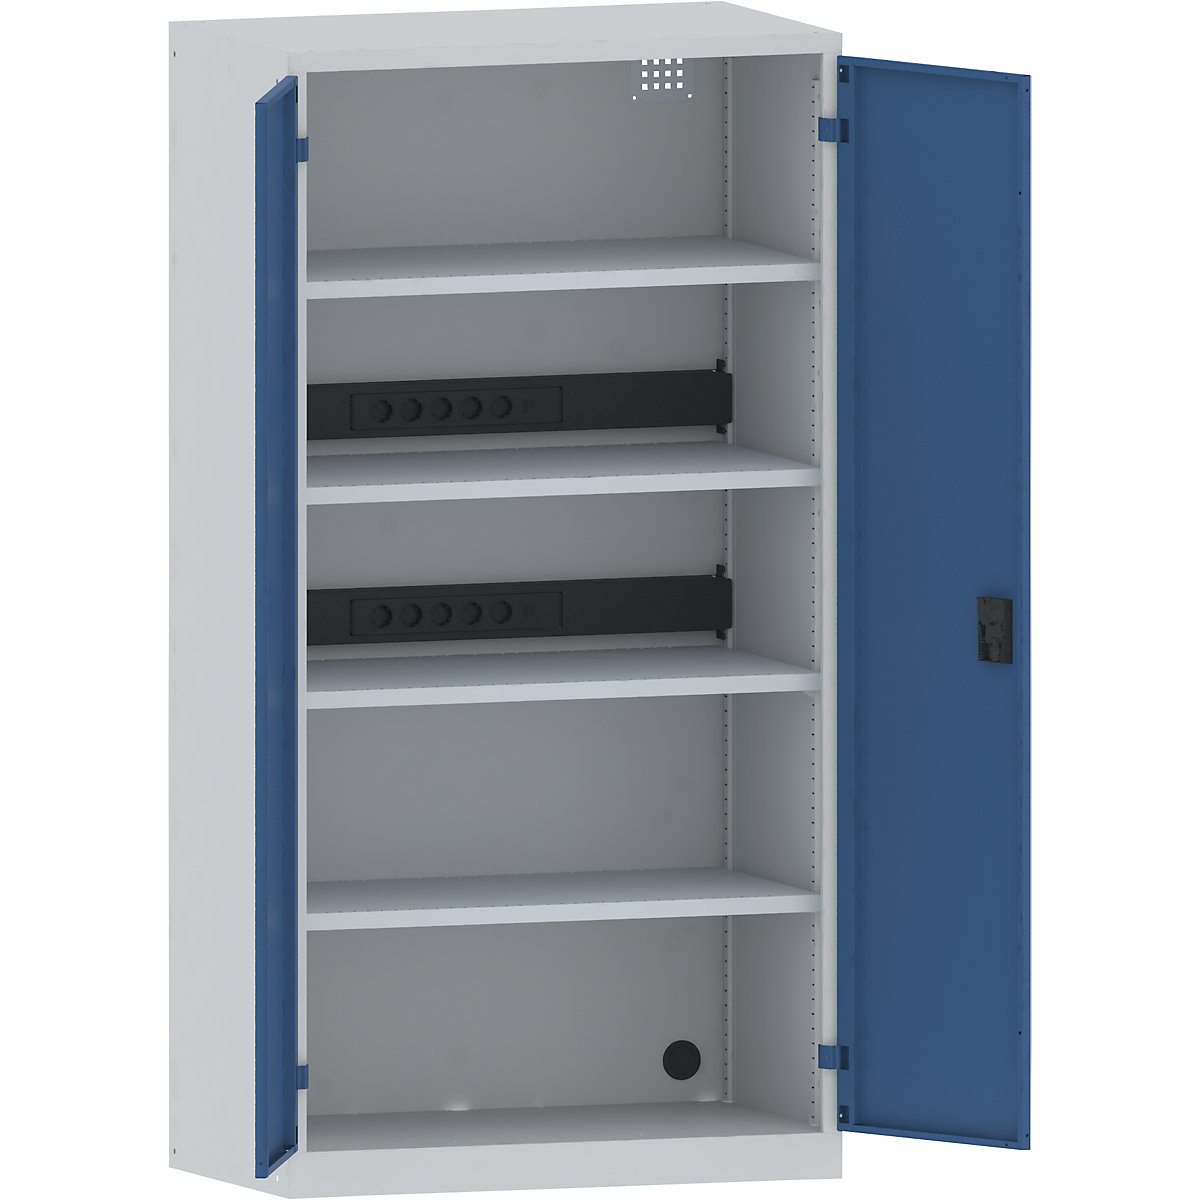 LISTA – Armario cargador de baterías, 4 baldas, puertas de chapa maciza, 2 regletas de enchufes detrás, gris / azul